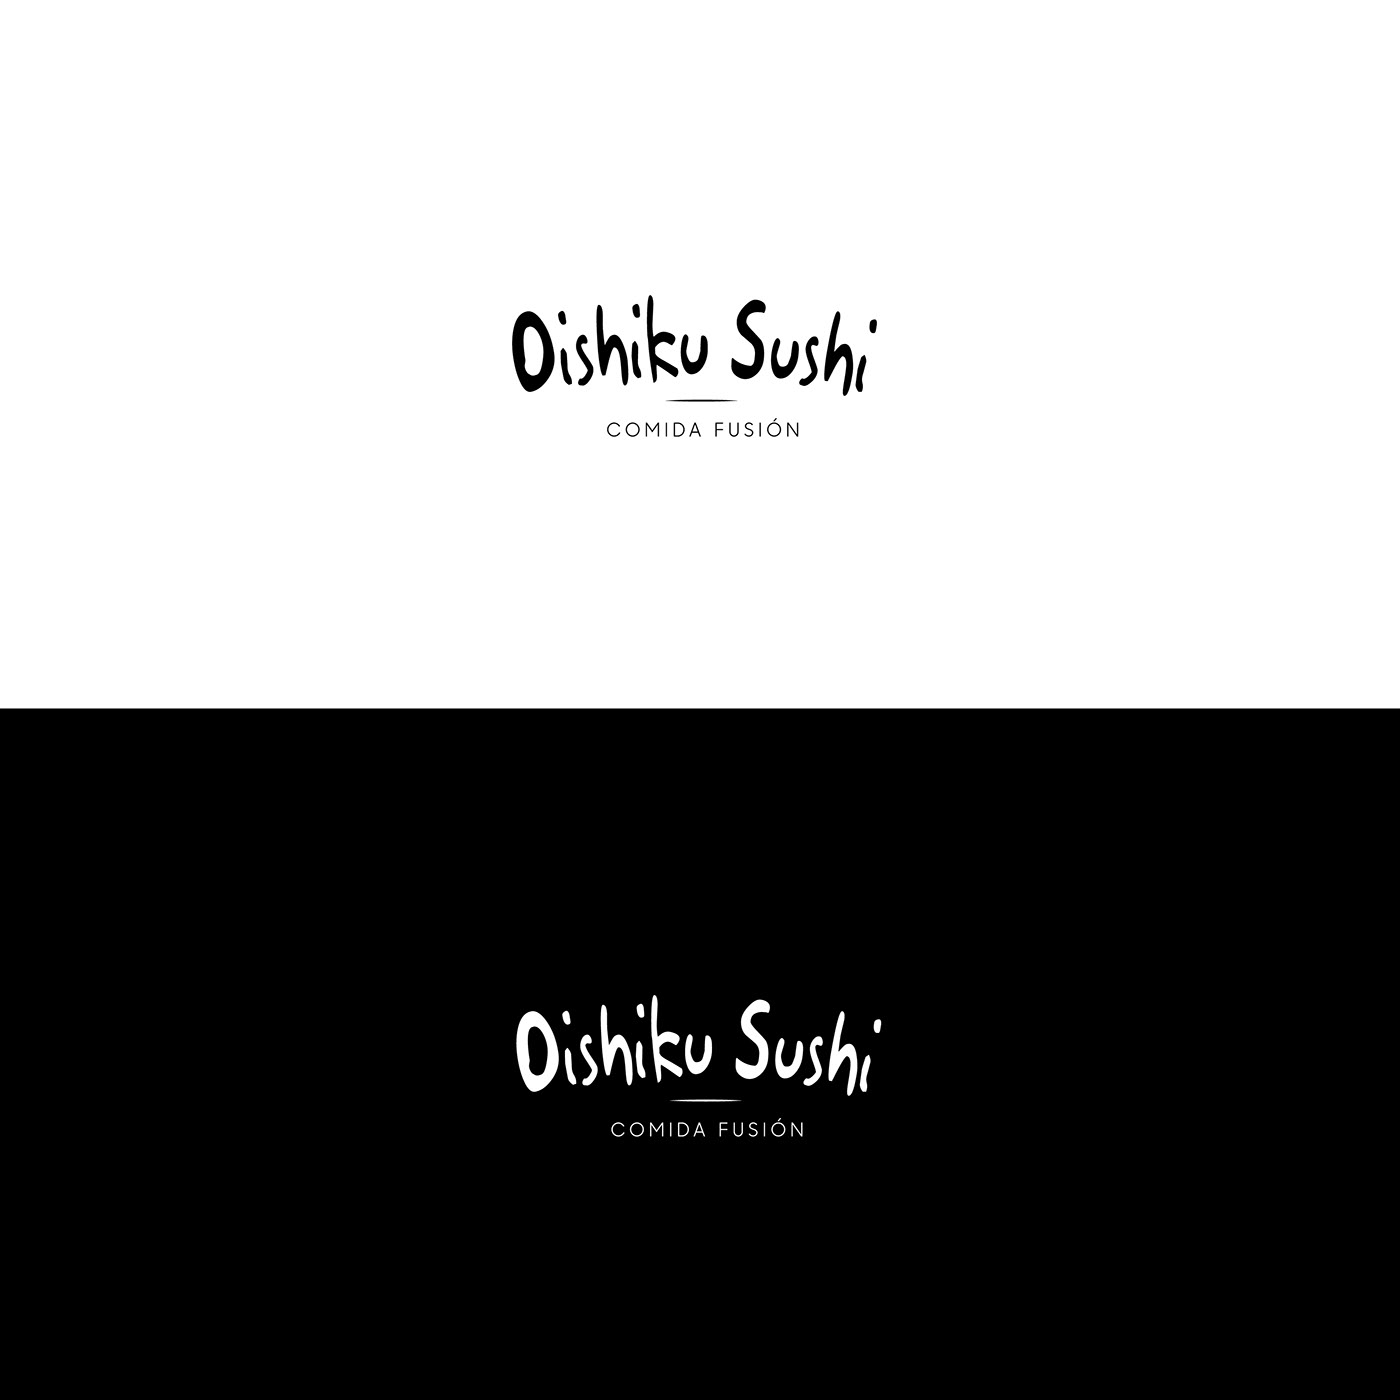 Sushi iustration dibujo Drawing  Logotipo marca